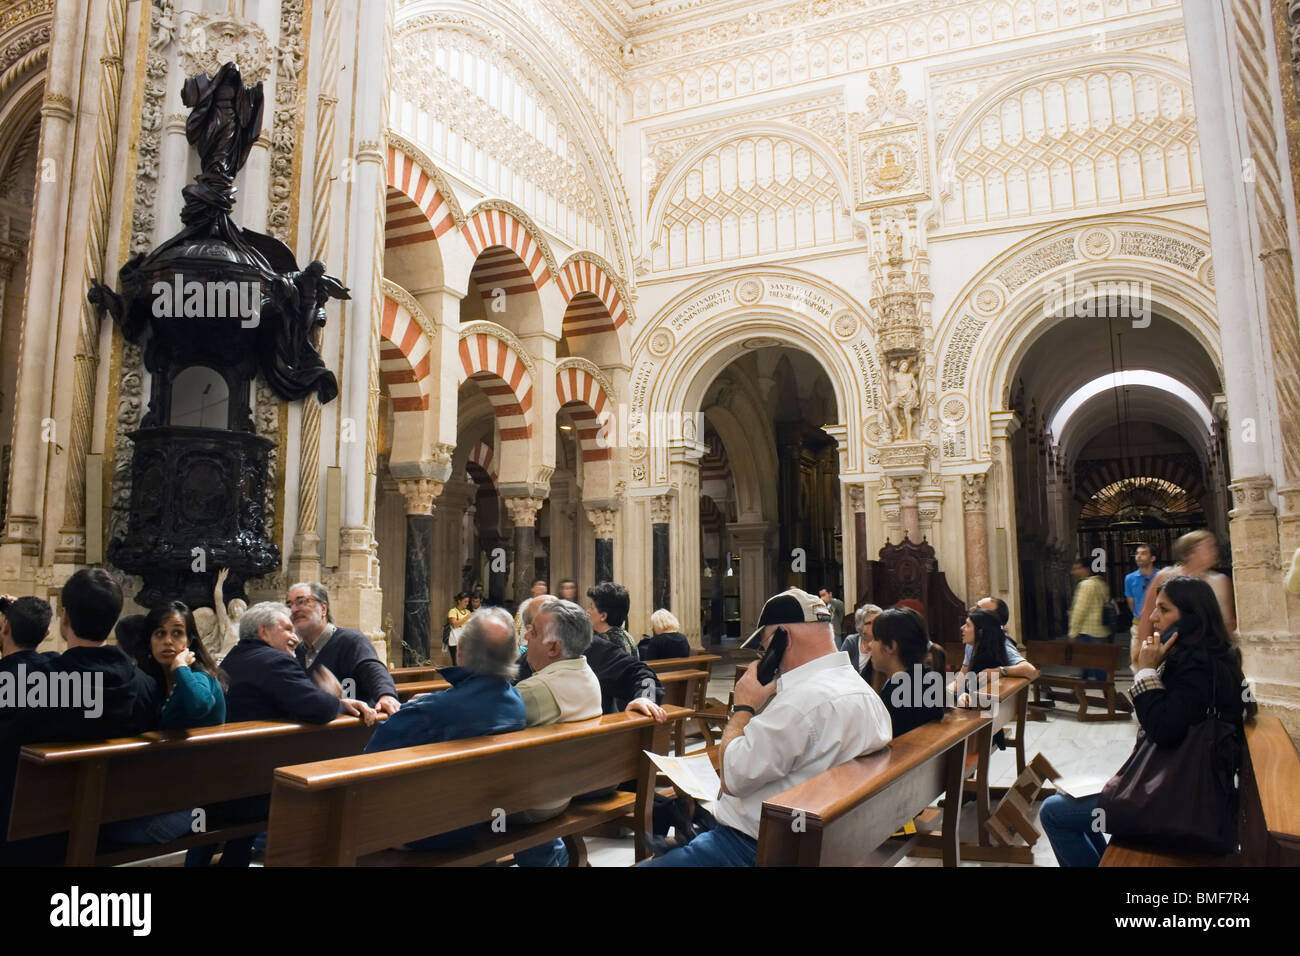 La Grande Mosquée, Cordoba, Espagne. Les touristes assis à écouter des audio guides expliquant l'architecture de la mosquée. Banque D'Images